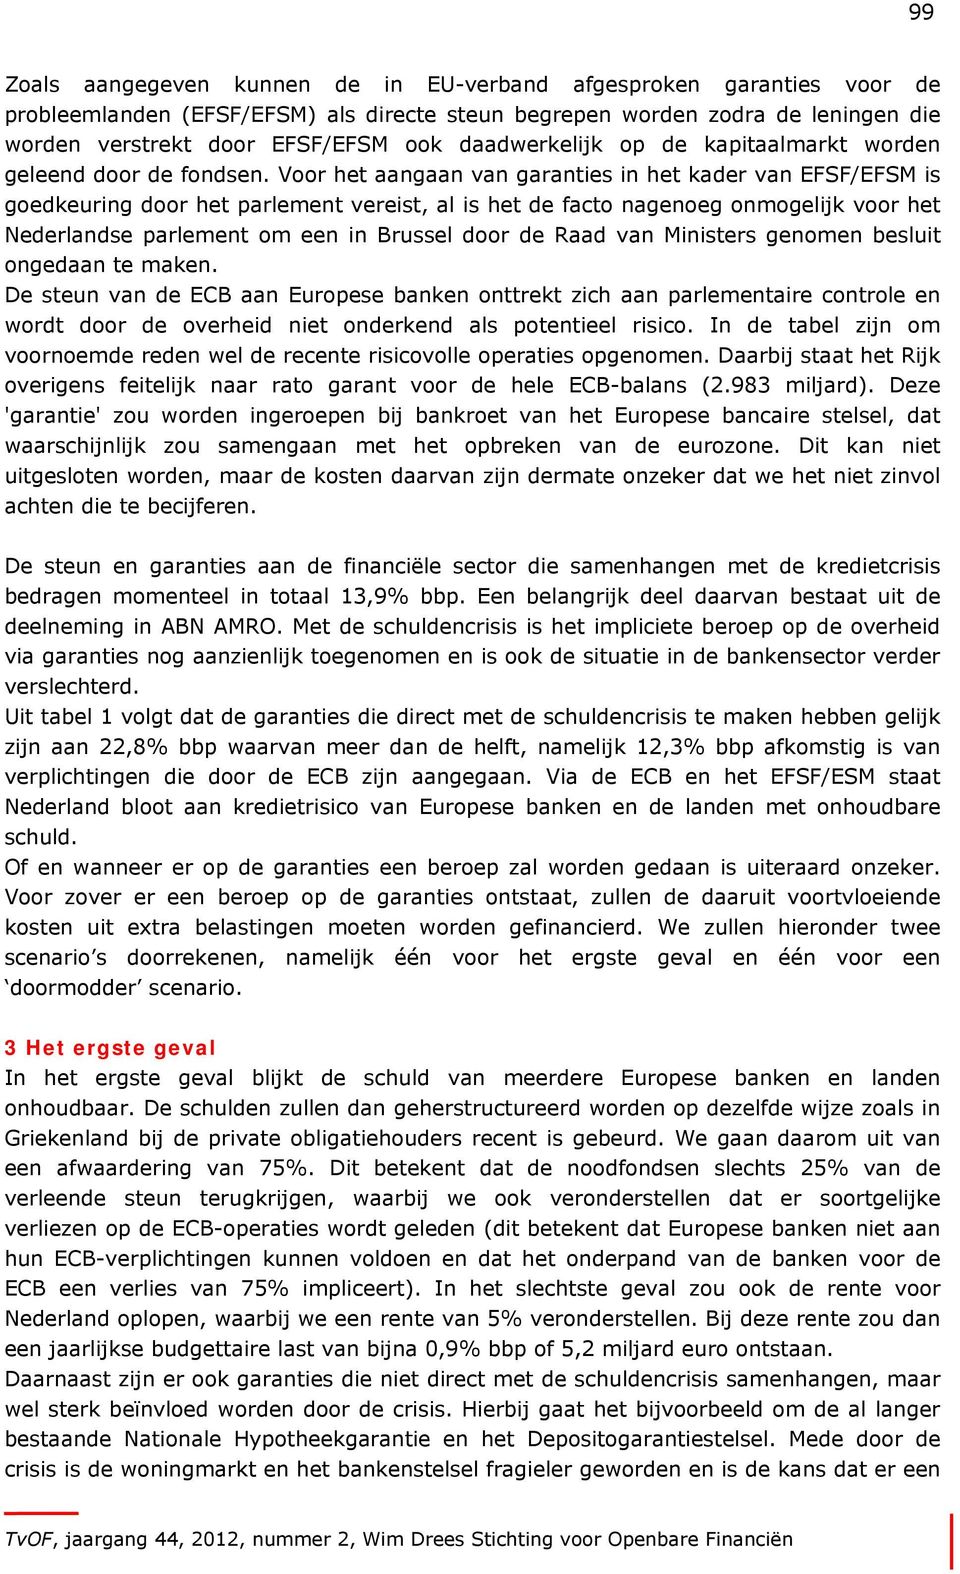 Voor het aangaan van garanties in het kader van EFSF/EFSM is goedkeuring door het parlement vereist, al is het de facto nagenoeg onmogelijk voor het Nederlandse parlement om een in Brussel door de